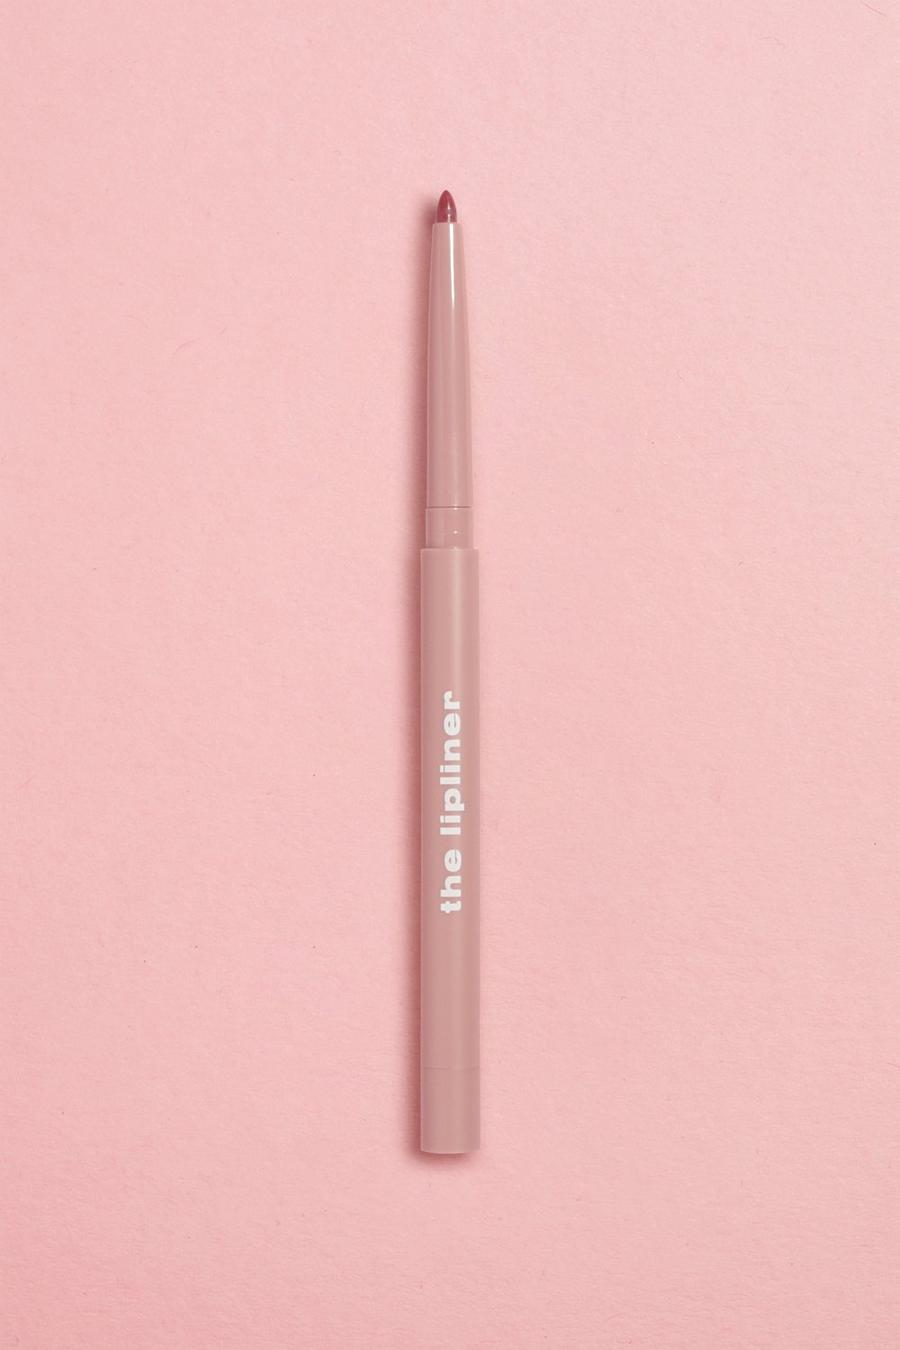 Boohoo Beauty - Le crayon à lèvres - Dark Pink